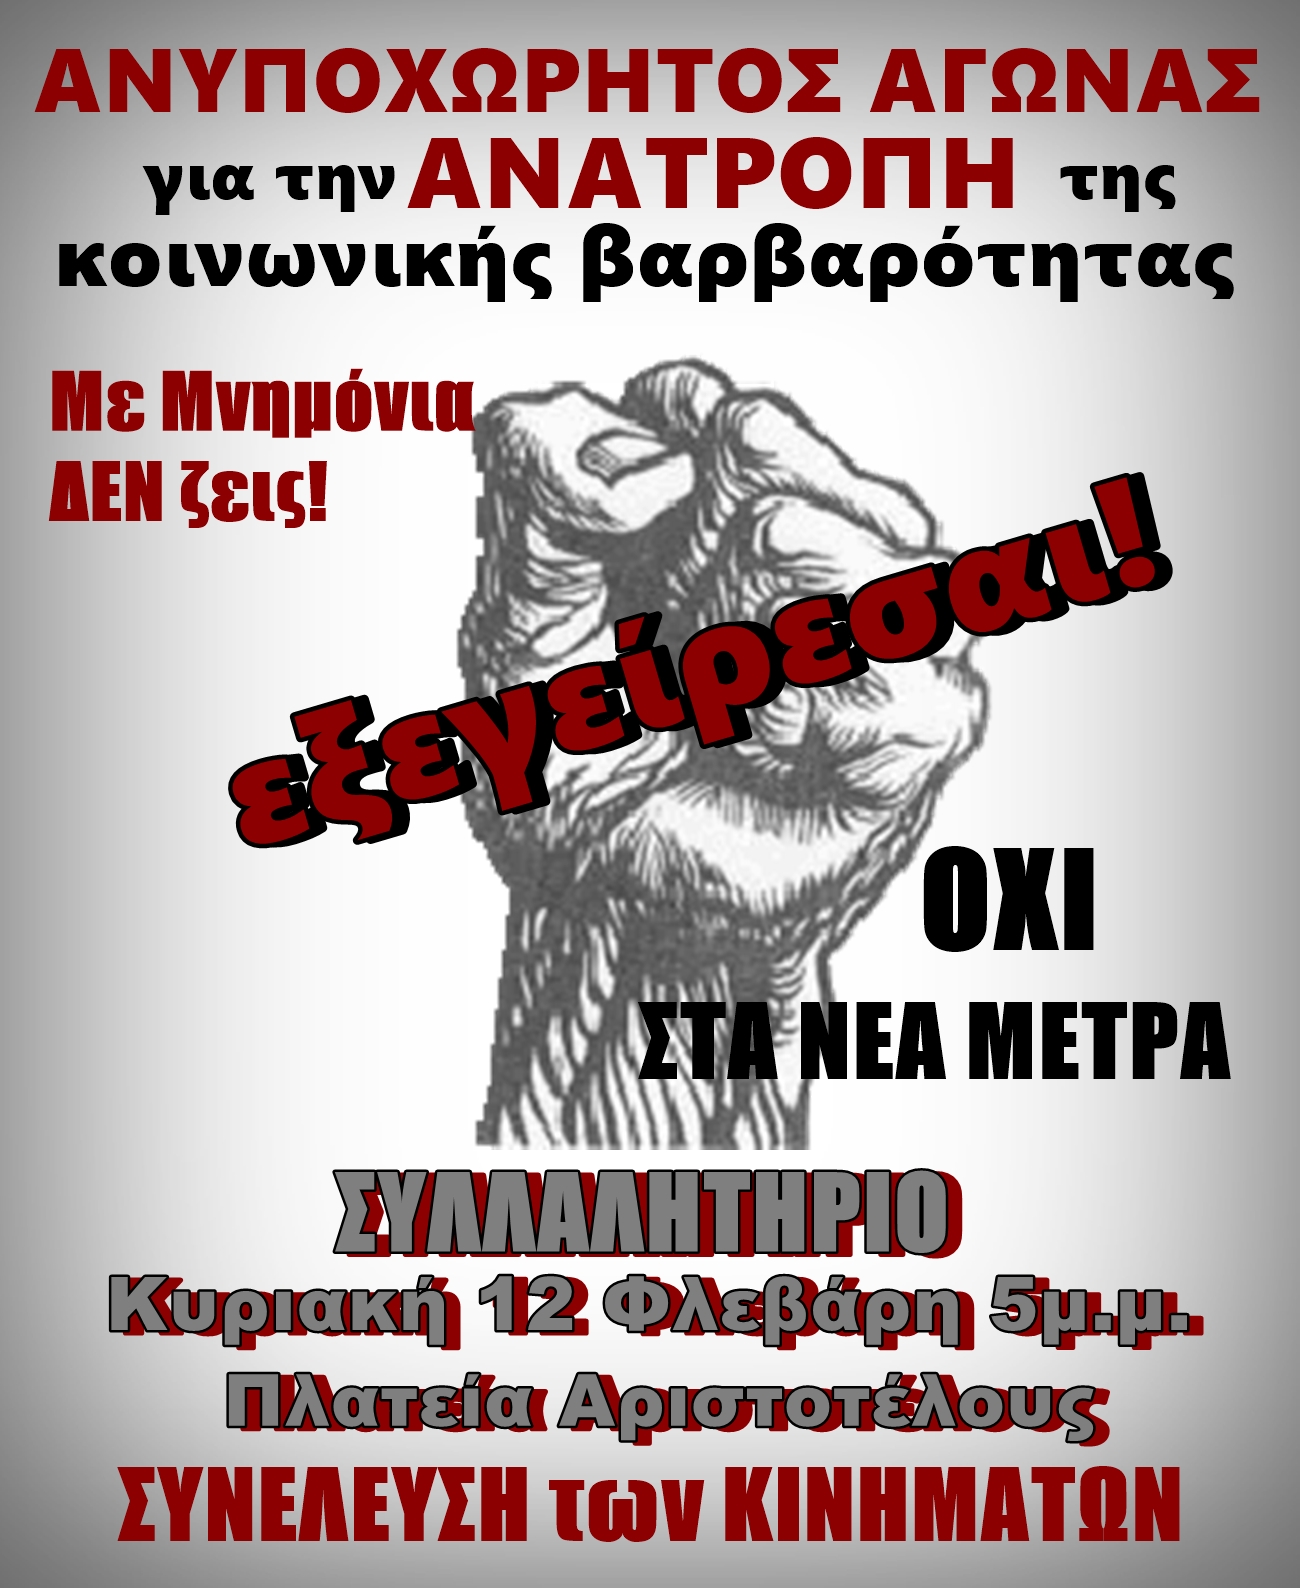 Σε συλλαλητήριο την Κυριακή 12 Φεβρουαρίου καλεί η Συνέλευση των Κινημάτων